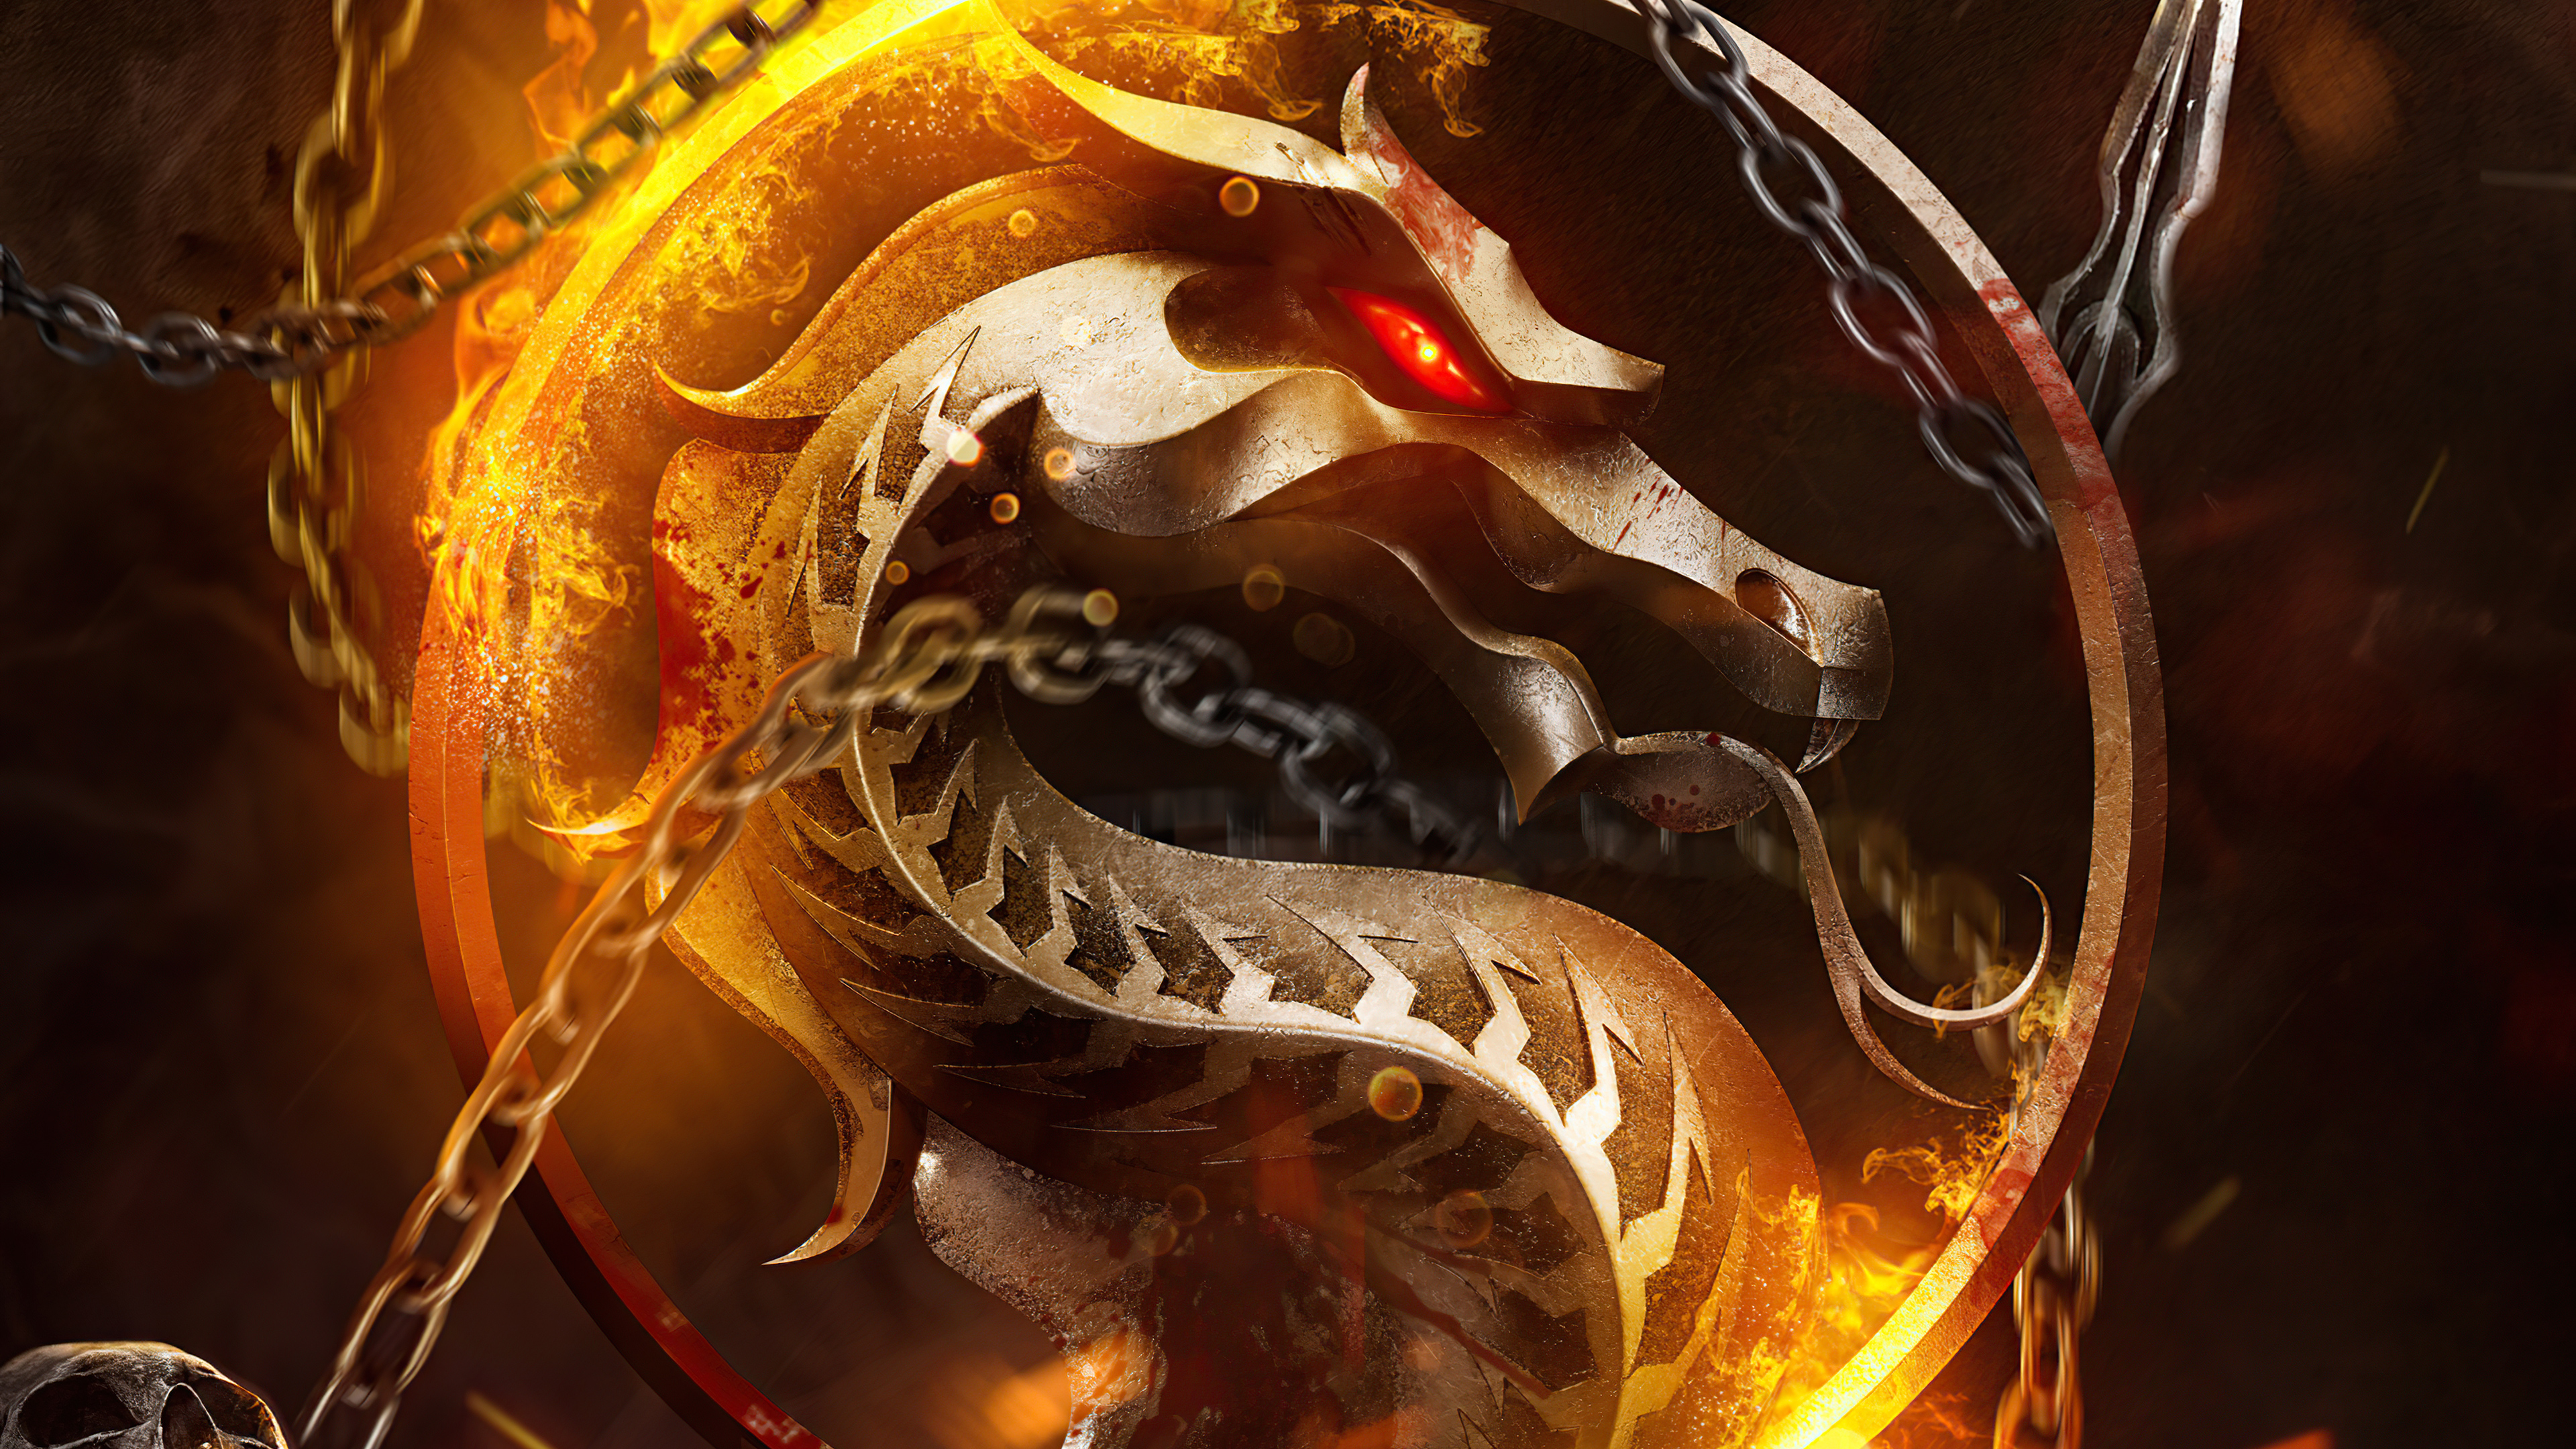 Free download wallpaper Mortal Kombat, Logo, Video Game on your PC desktop